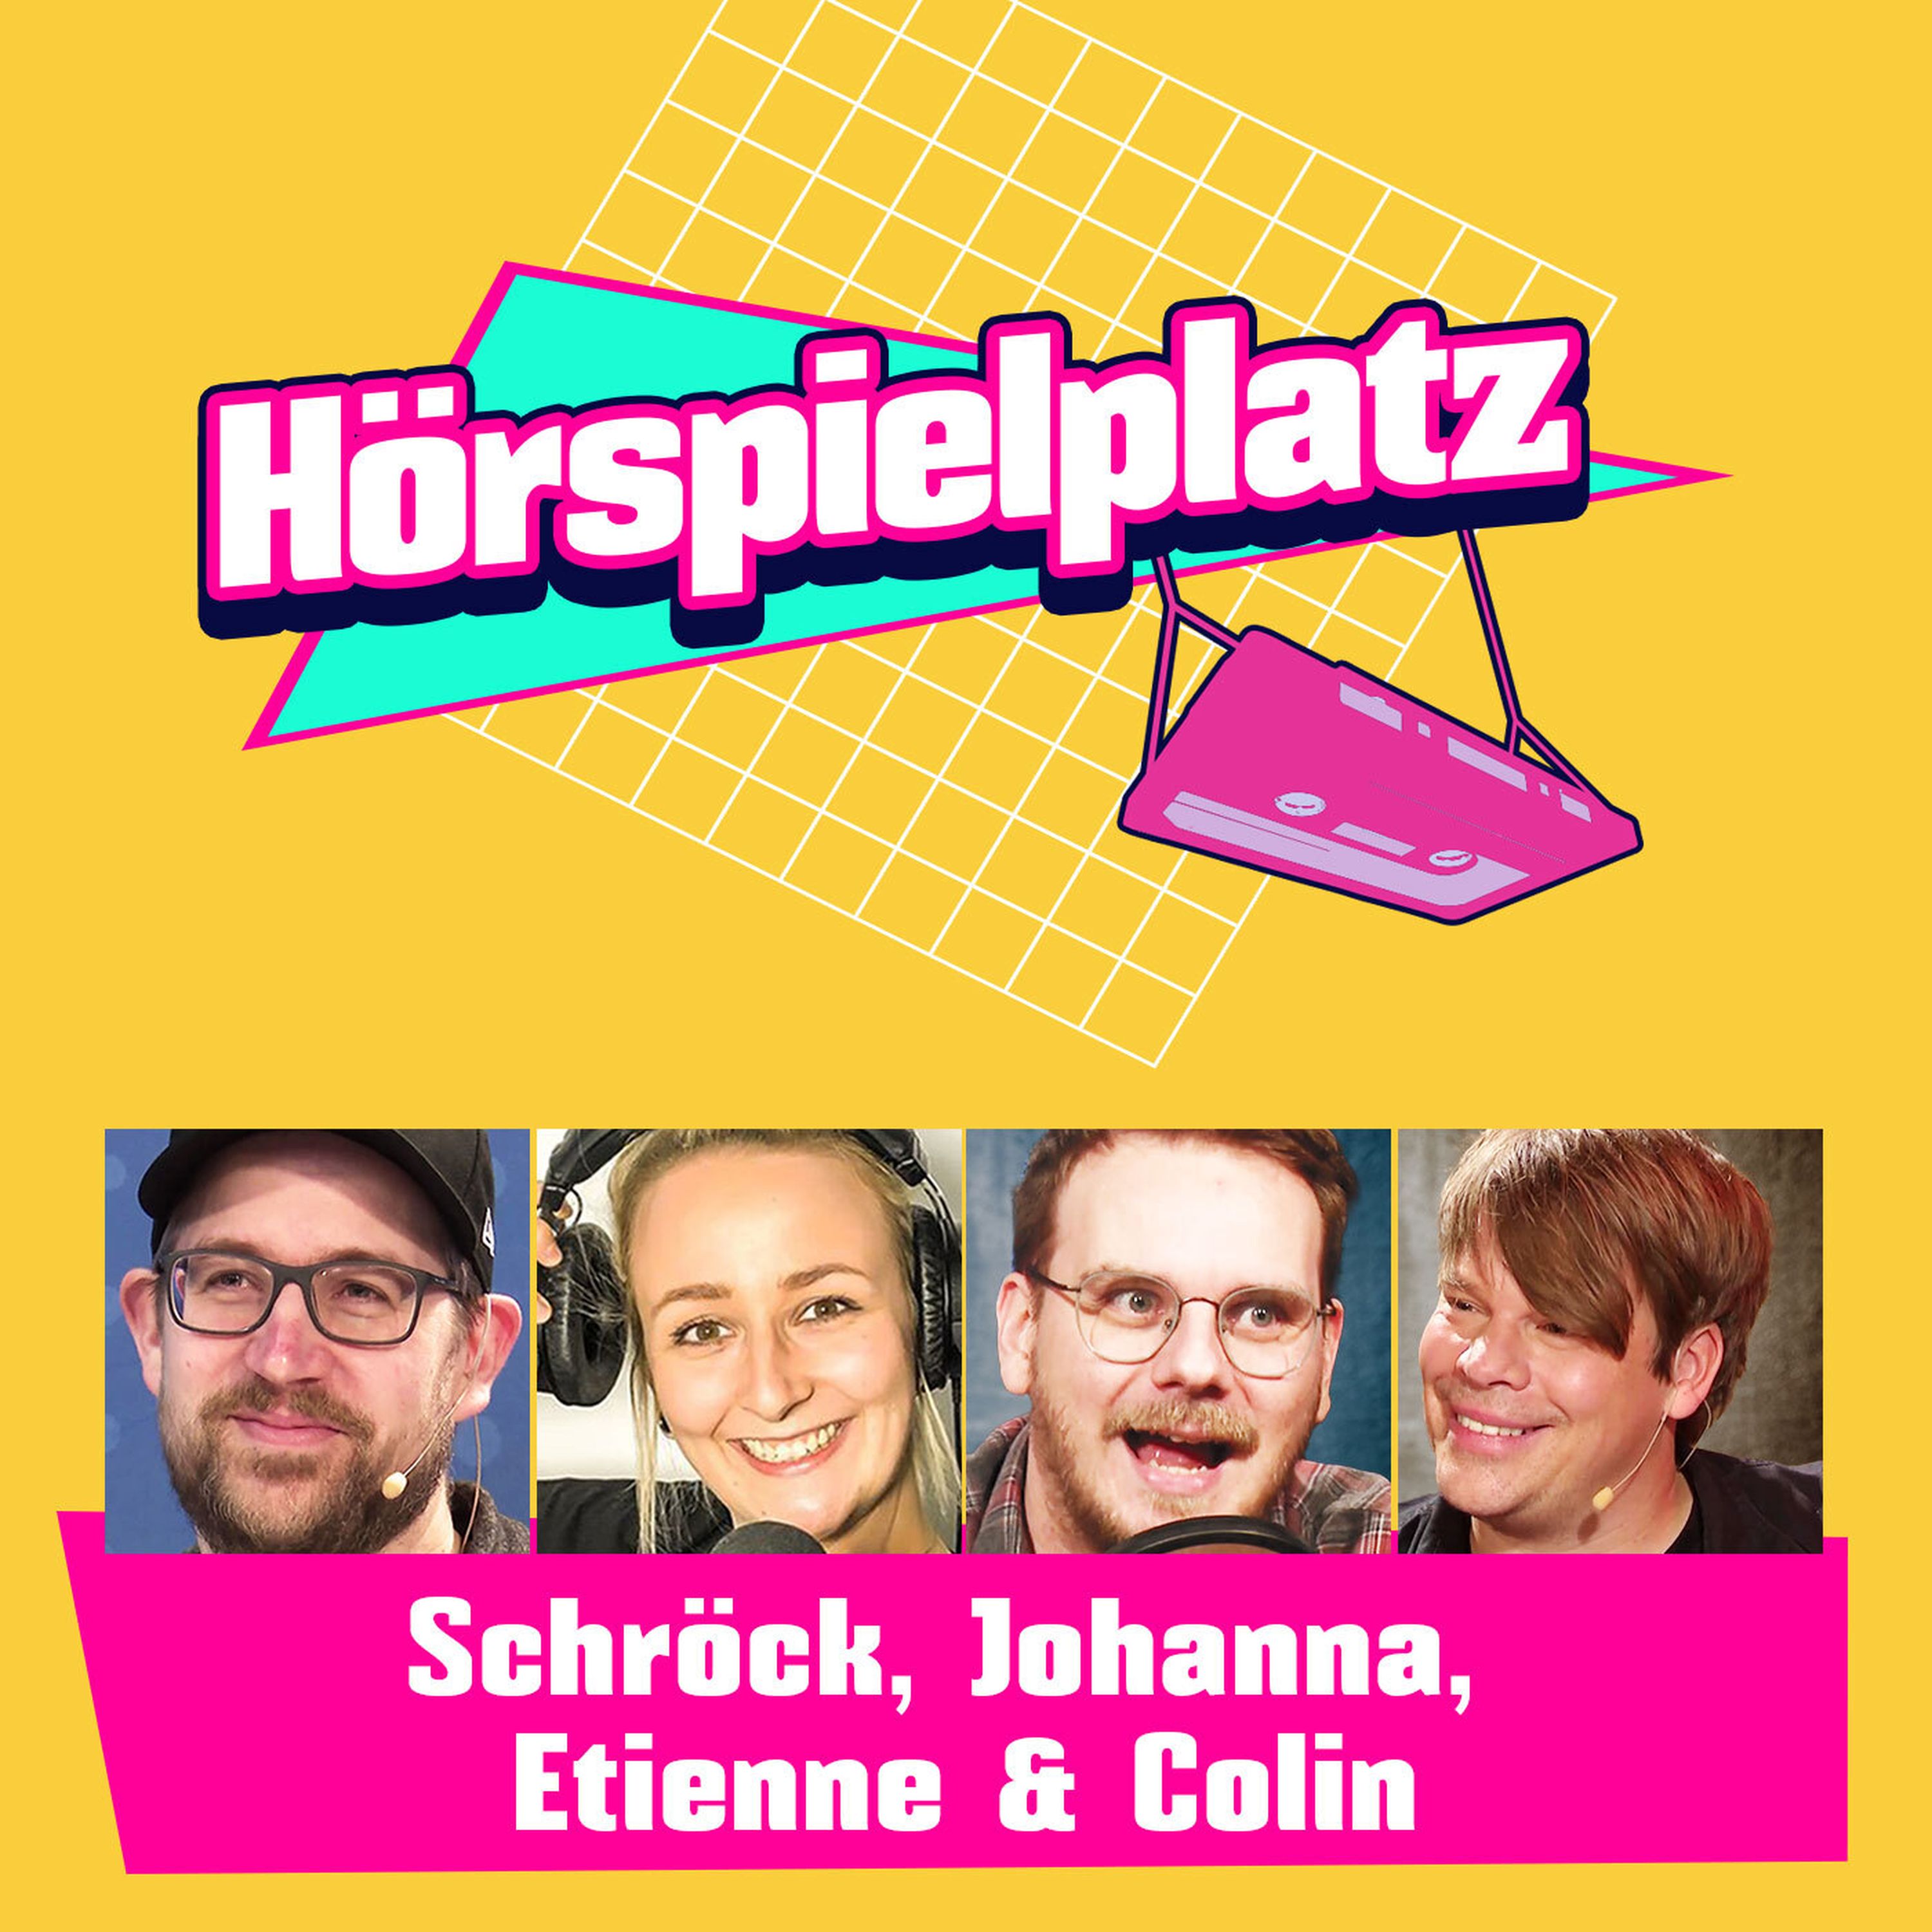 Folge 20: Etienne, Colin, Schröck und Johanna über ihre persönlichen Highlights im Hörspielplatz